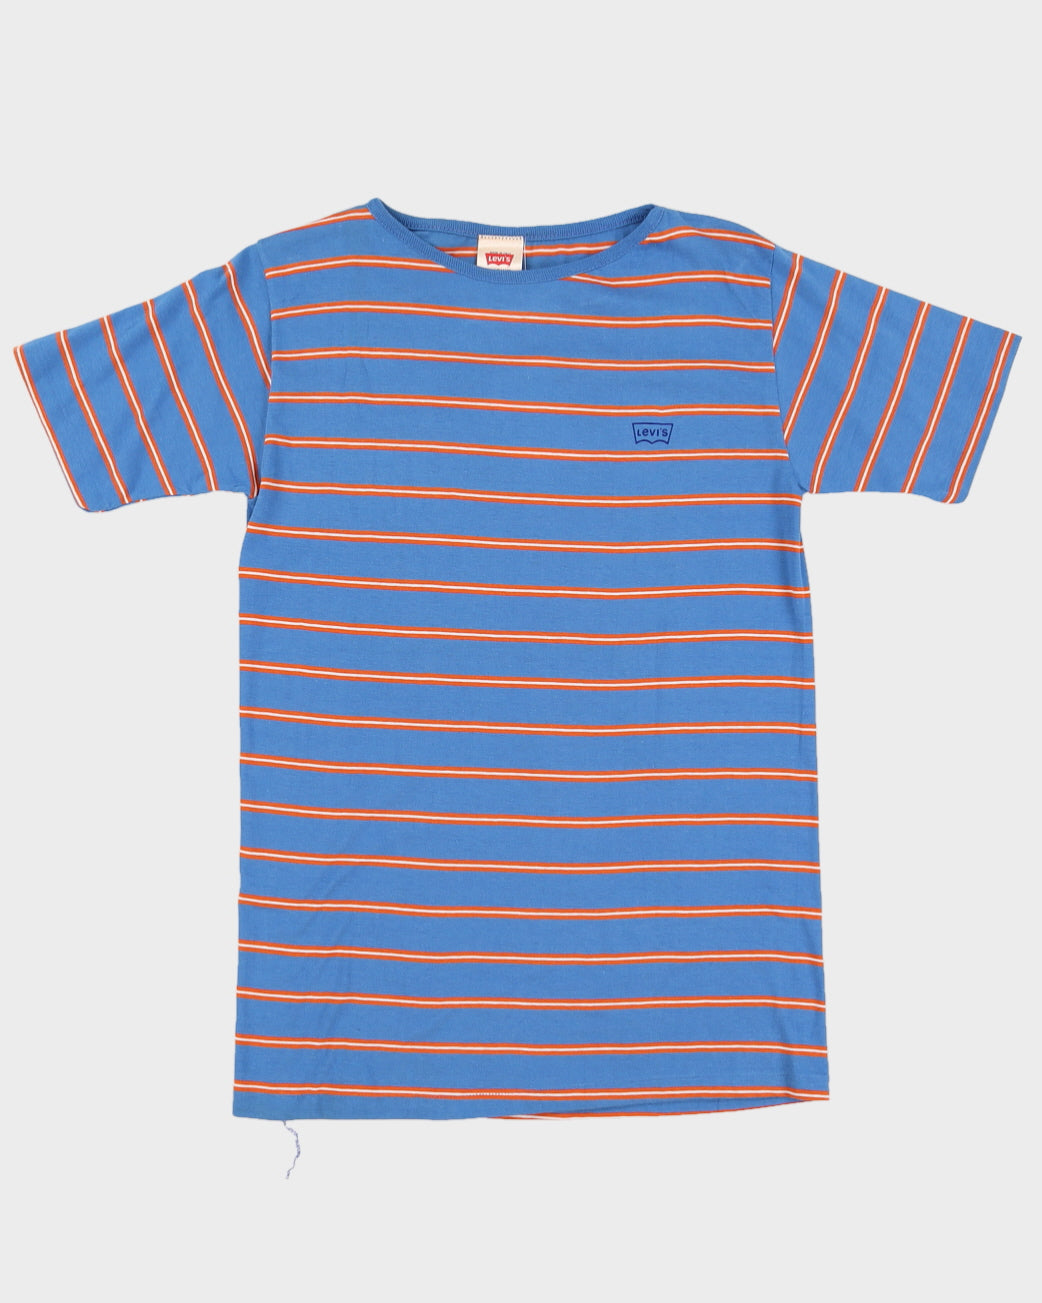 Vintage 70s Levi's Blue & Orange Striped T-Shirt - M